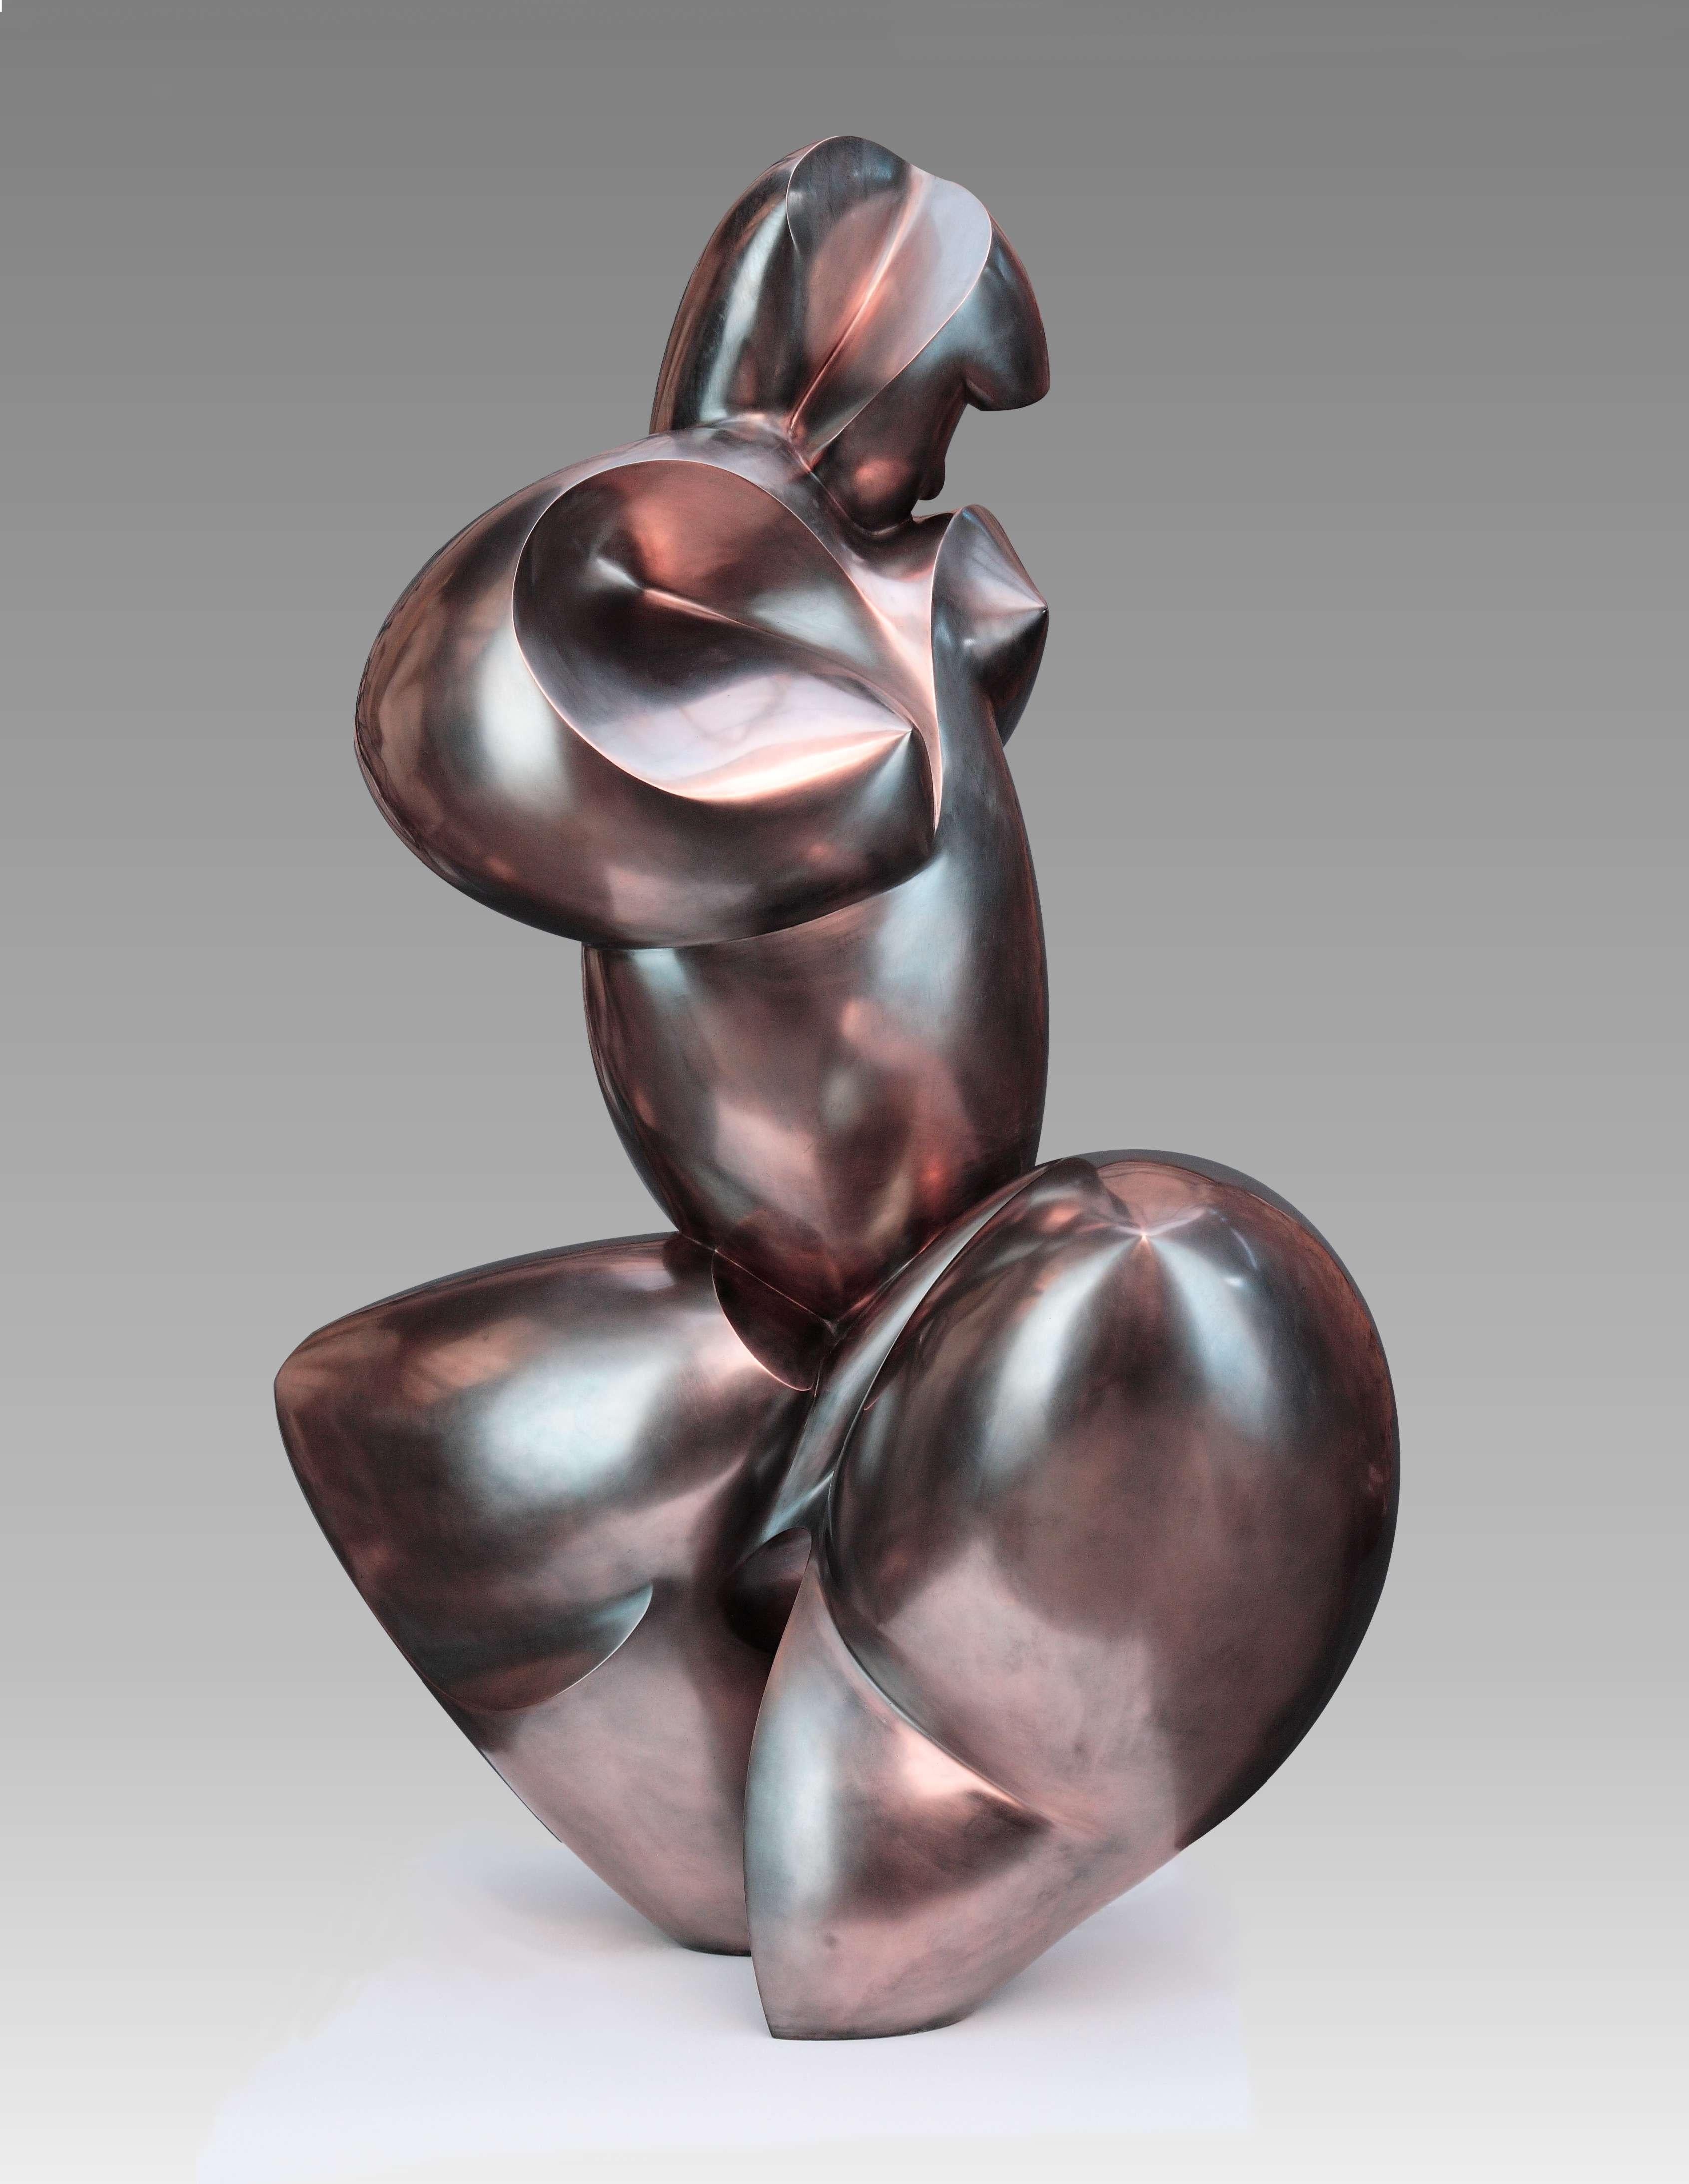 Pollès - Sculpture en bronze - Yterbine
Bronze
4/4
Créé en 1998, casté en 2003
120 x 85 x 70 cm
Signé et numéroté

BIOGRAPHIE
Pollès est né à Paris en 1945
Comme Léonard de Vinci à la recherche de la perfection anatomique, de la représentation du